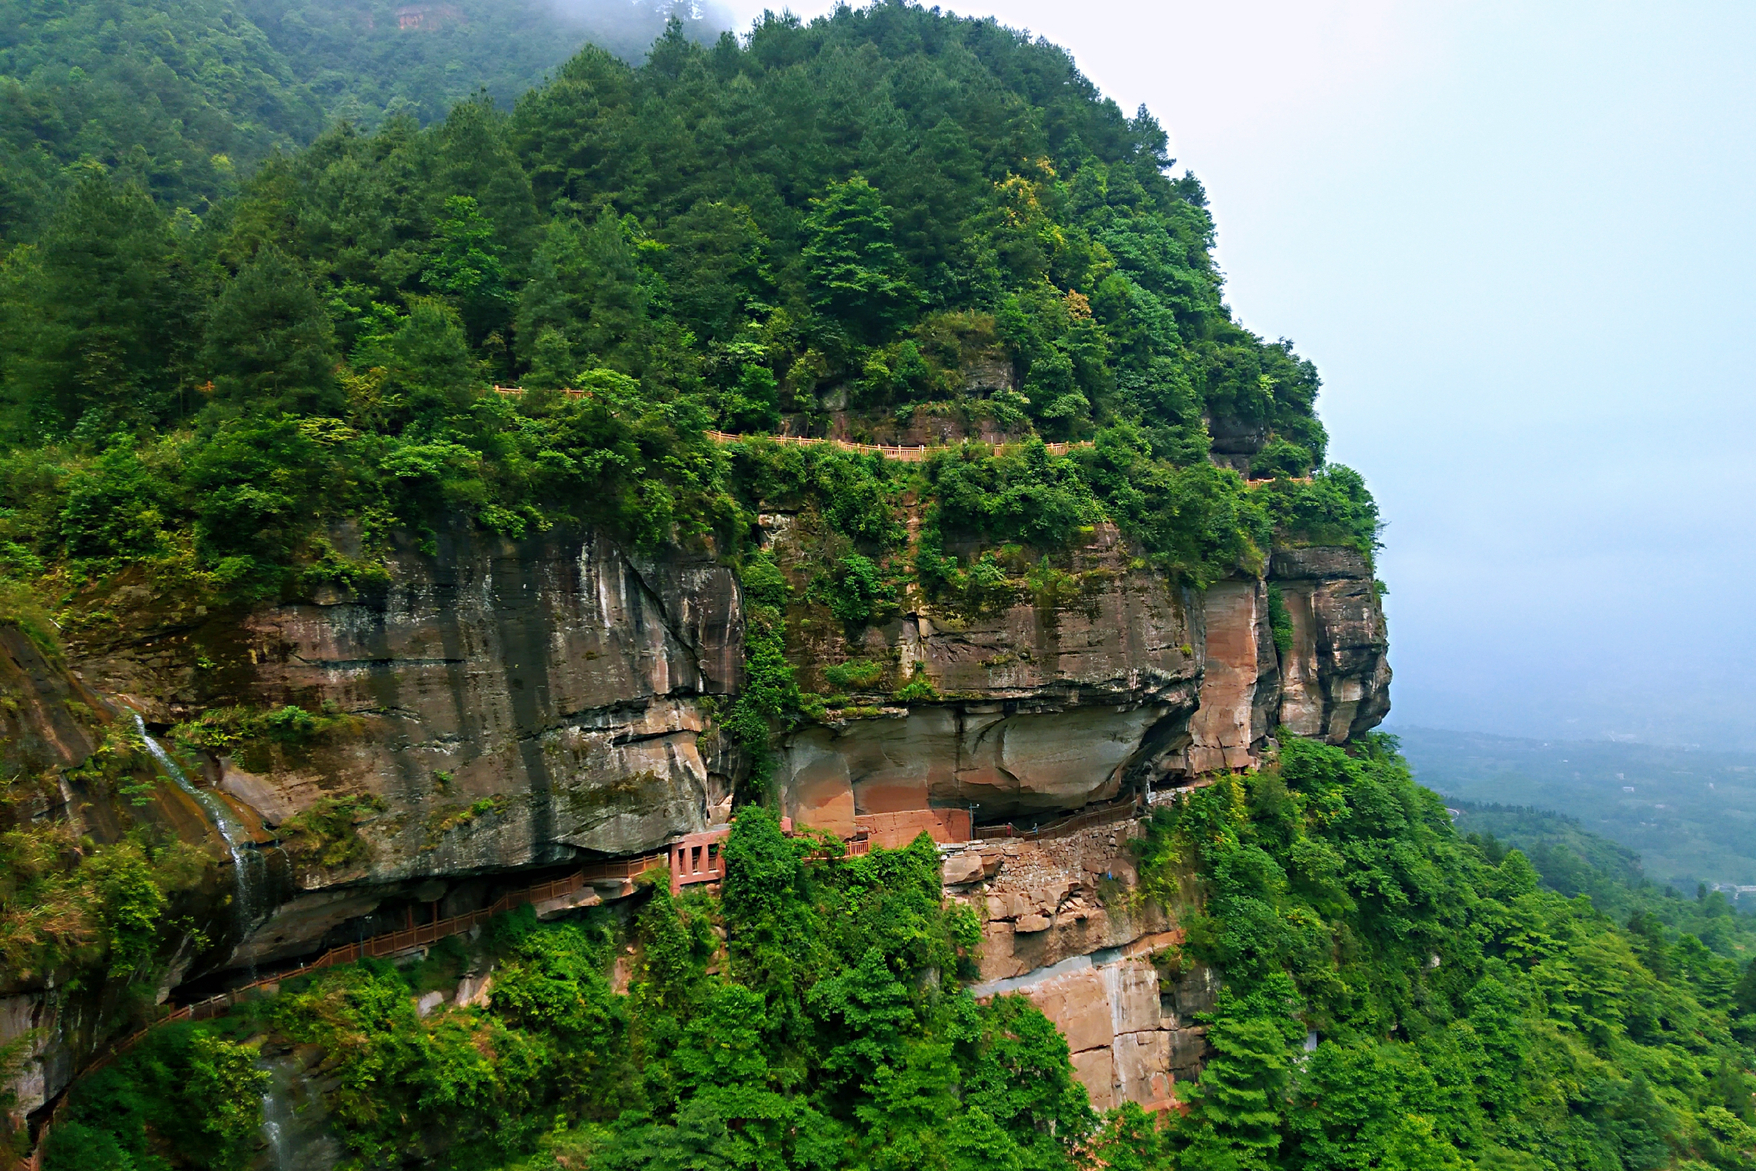 重庆綦江有座山风景美如画,山崖一块巨石像极人脸,眼睛最传神!